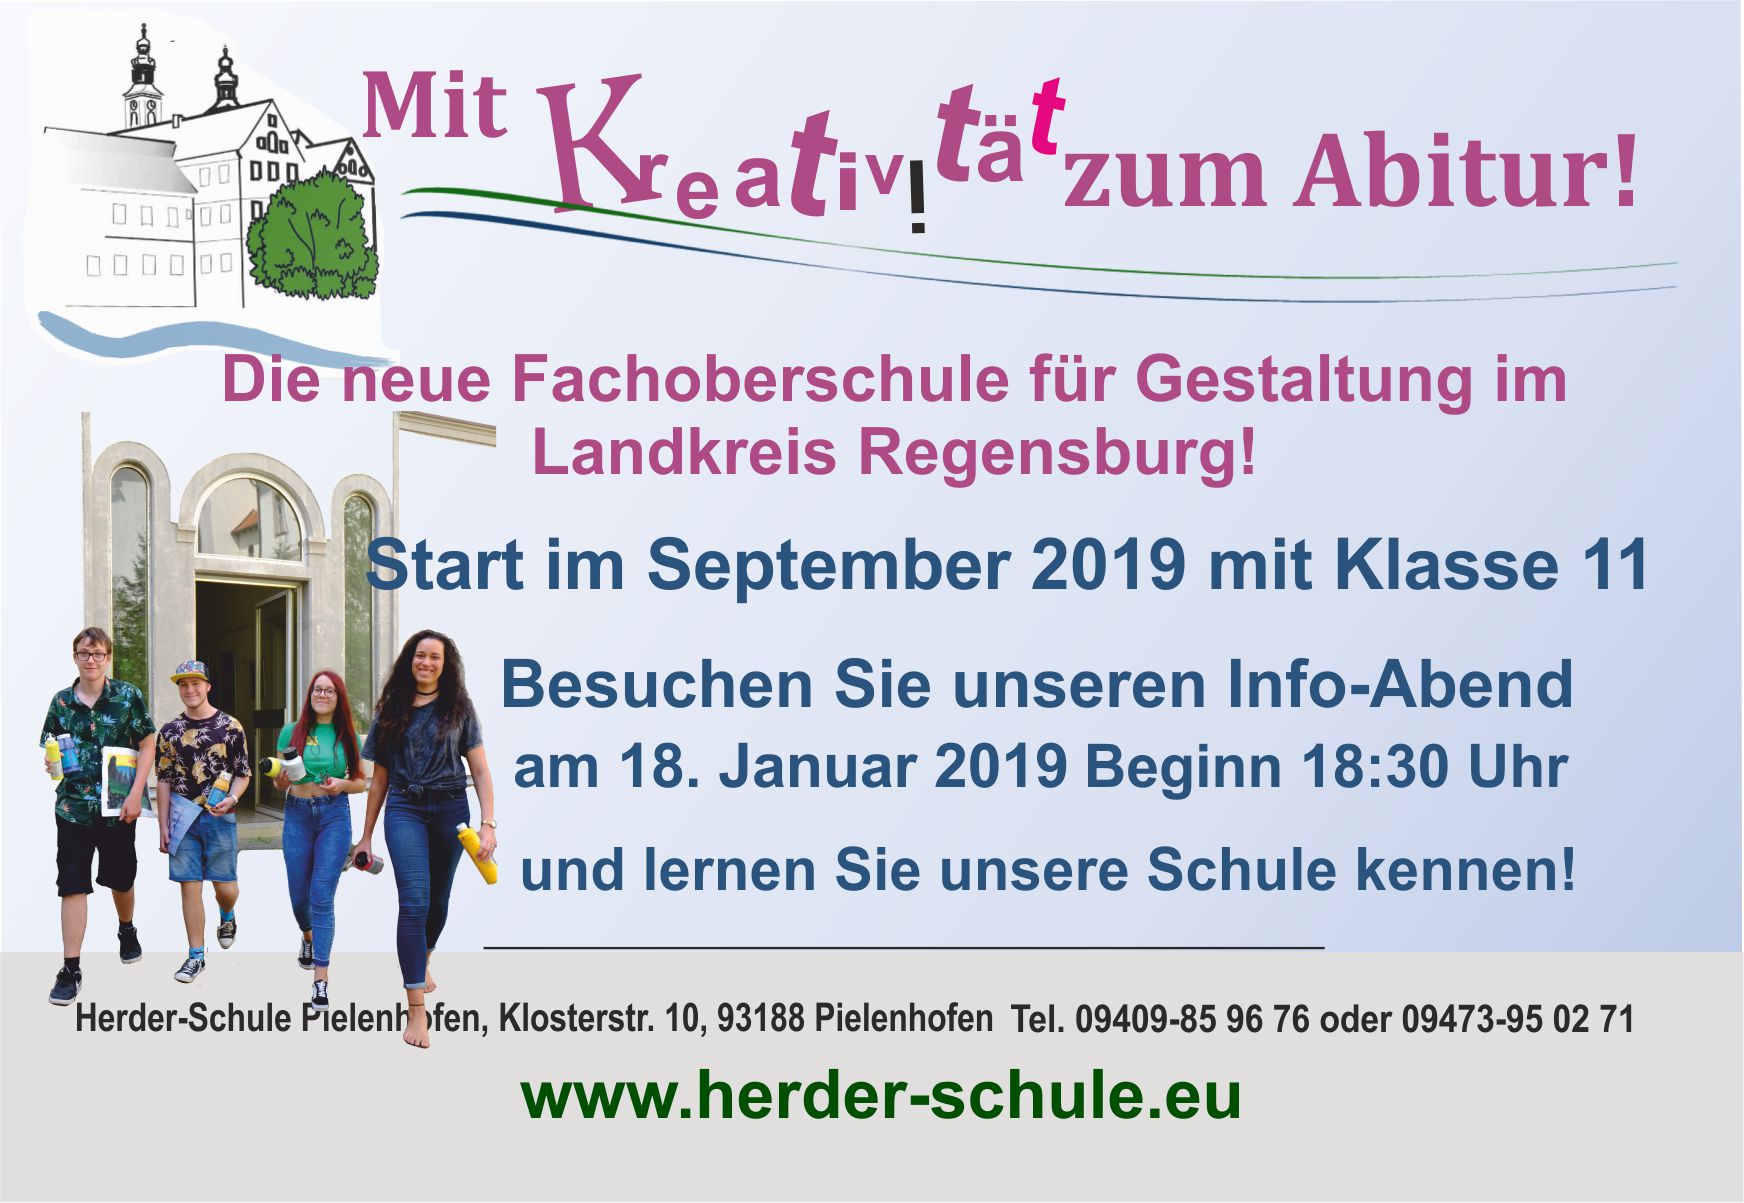 Herder-Schule - Staatlich anerkannte Privatschule Pielenhofen: Mit Kunst und Kreativität zum Abitur